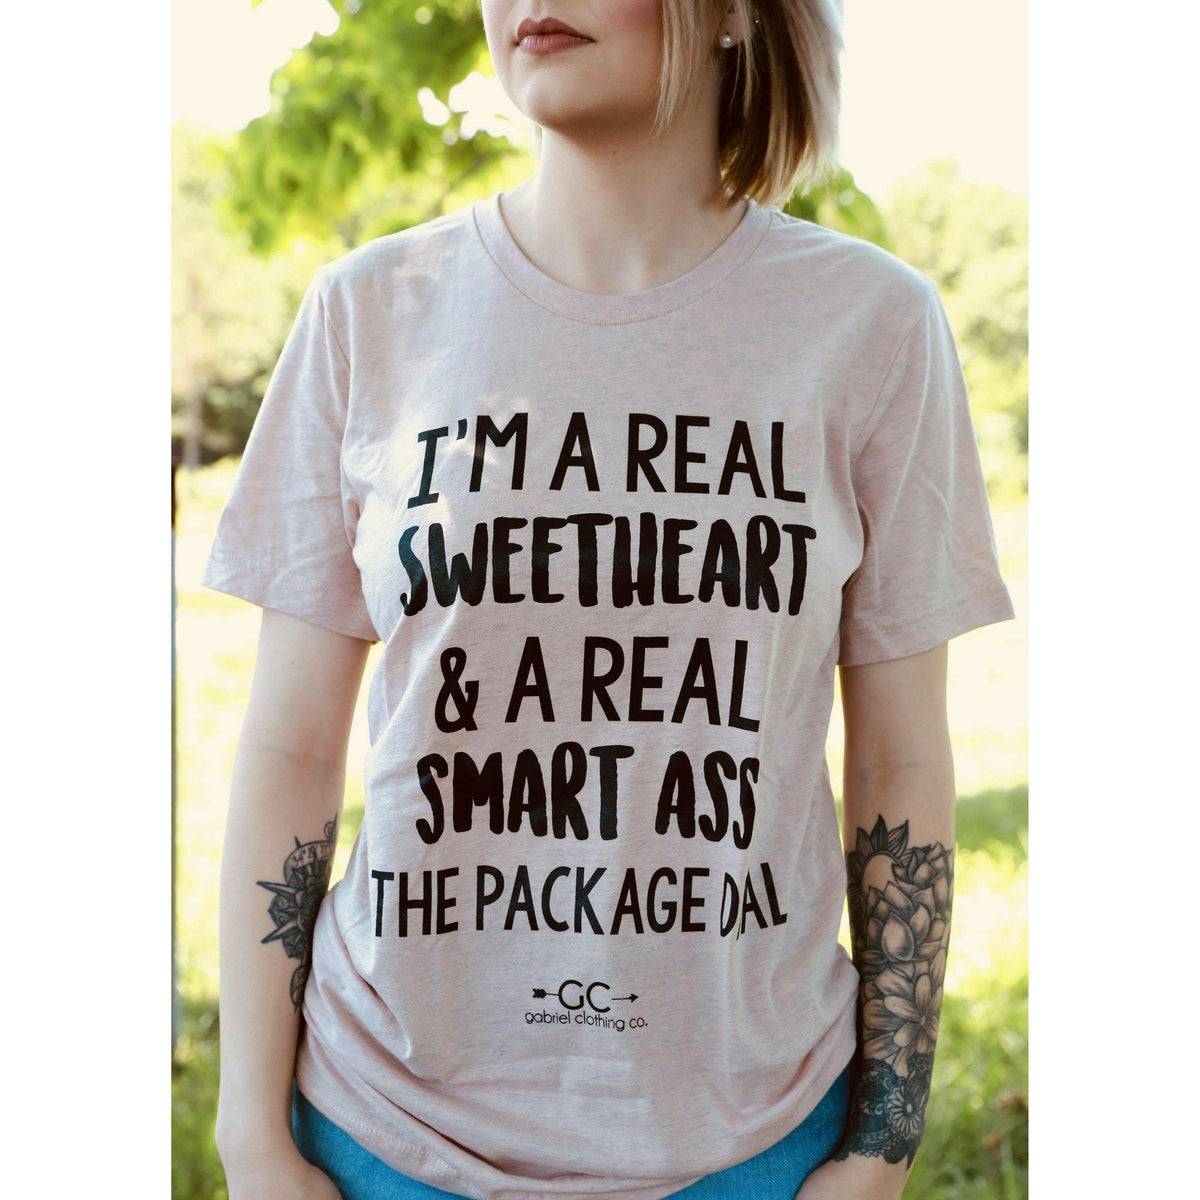 Sweetheart The Package Deal tee or sweatshirt